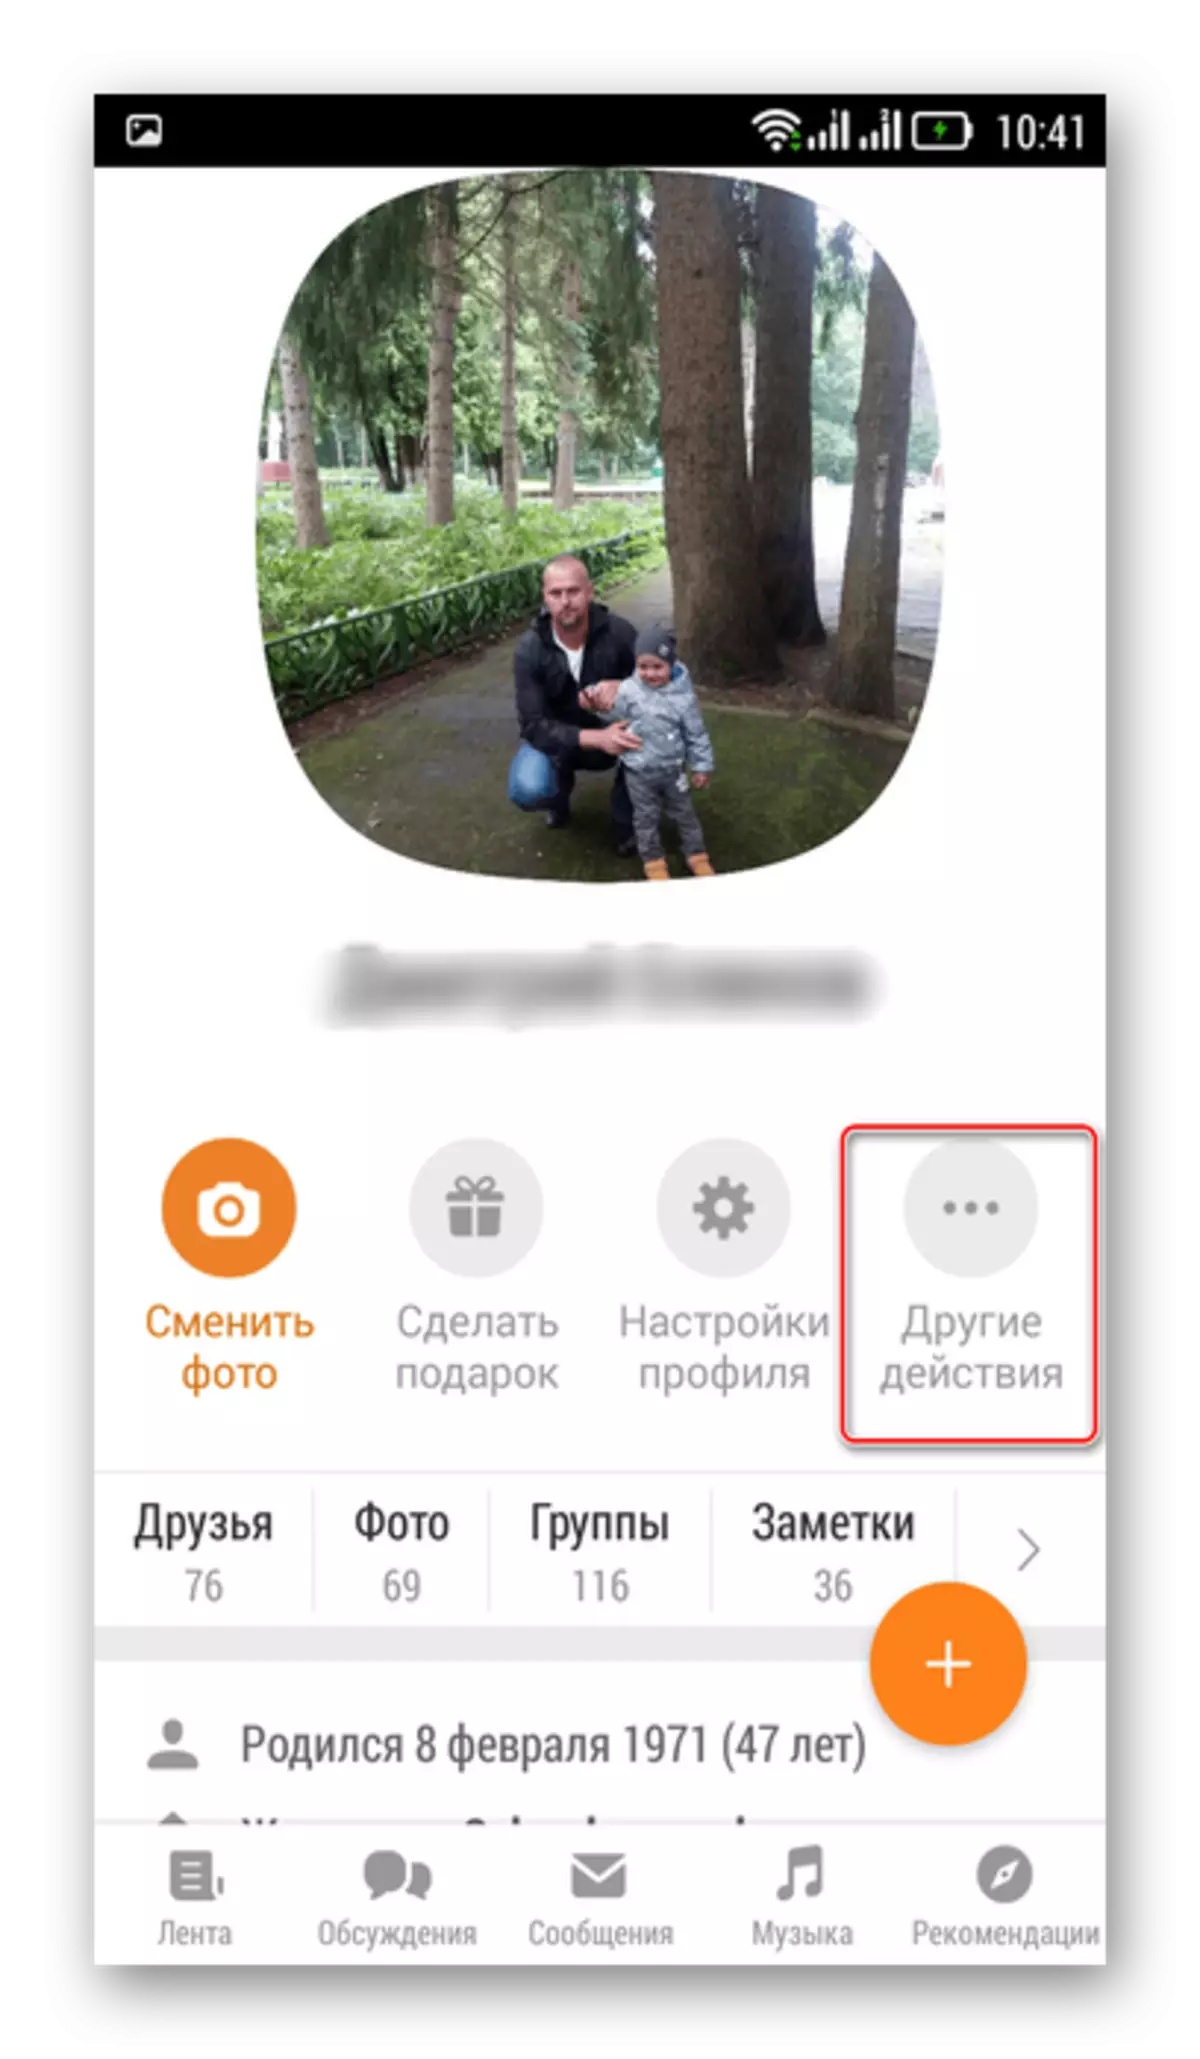 Wejście do innych działań w aplikacji mobilnej Odnoklassnik